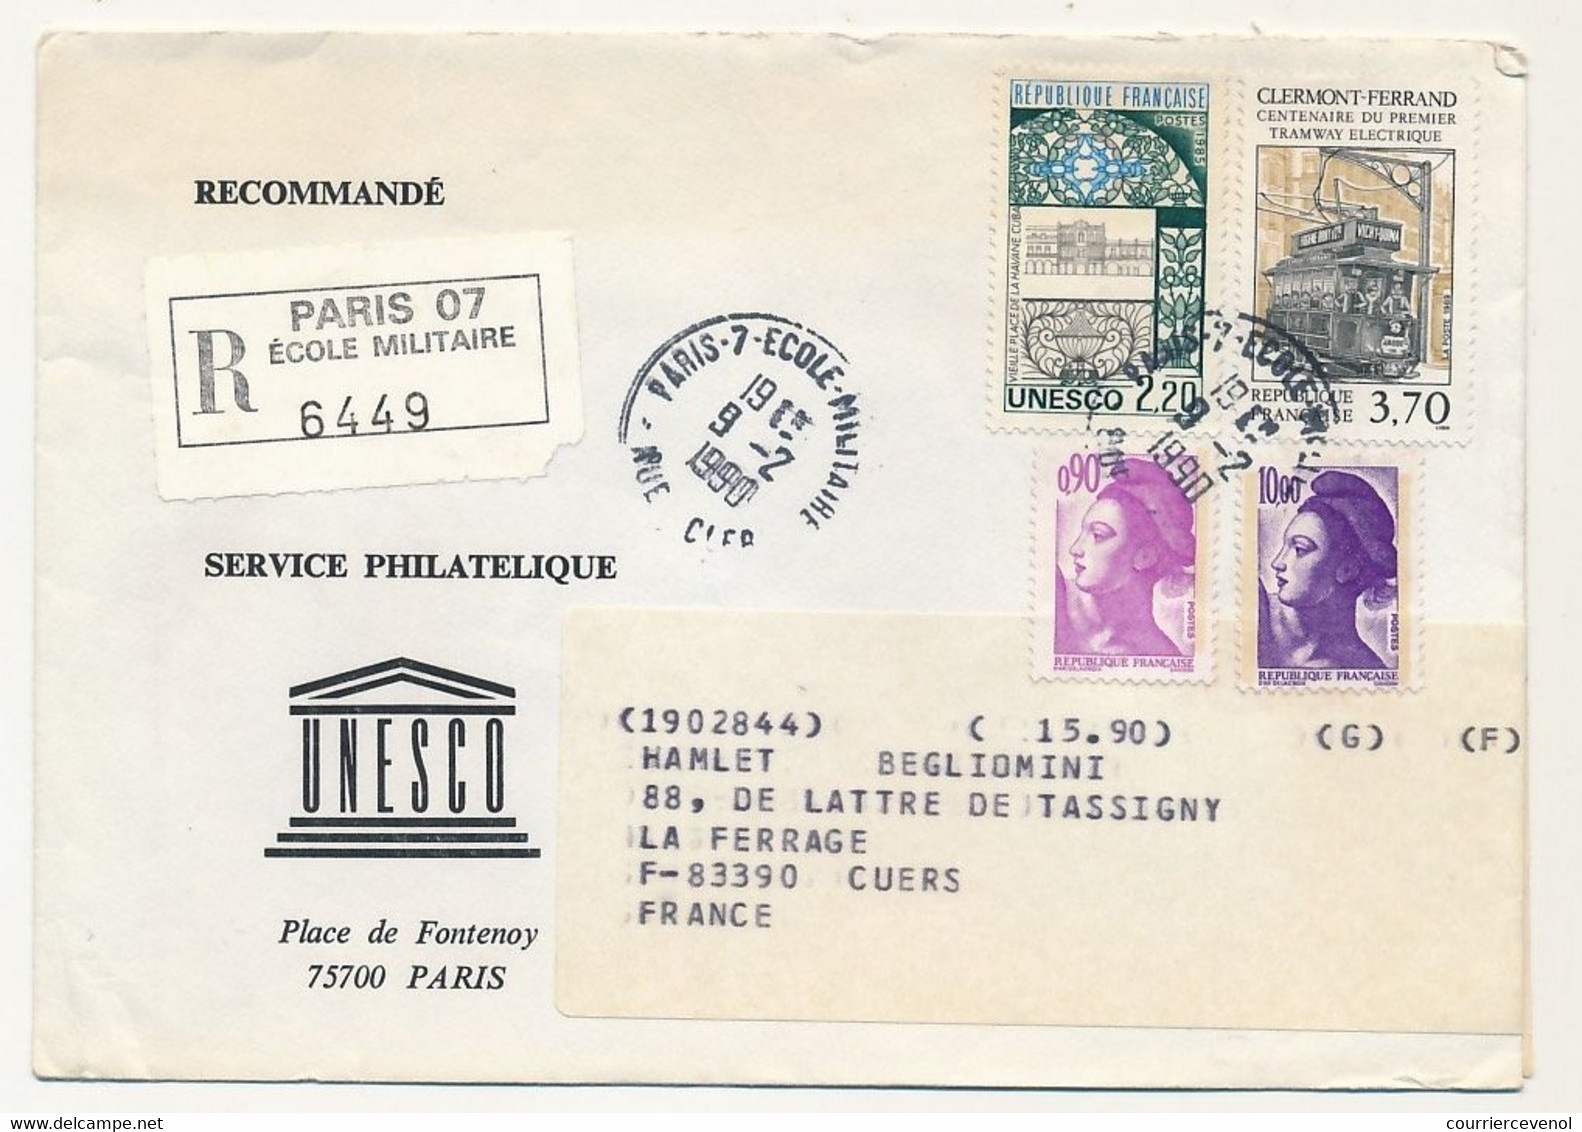 FRANCE - UNESCO - 8 Enveloppes Service Philatélique Unesco Avec Timbres De Service - Obl Paris 7 Rue Clerc - 1989/90 - Storia Postale